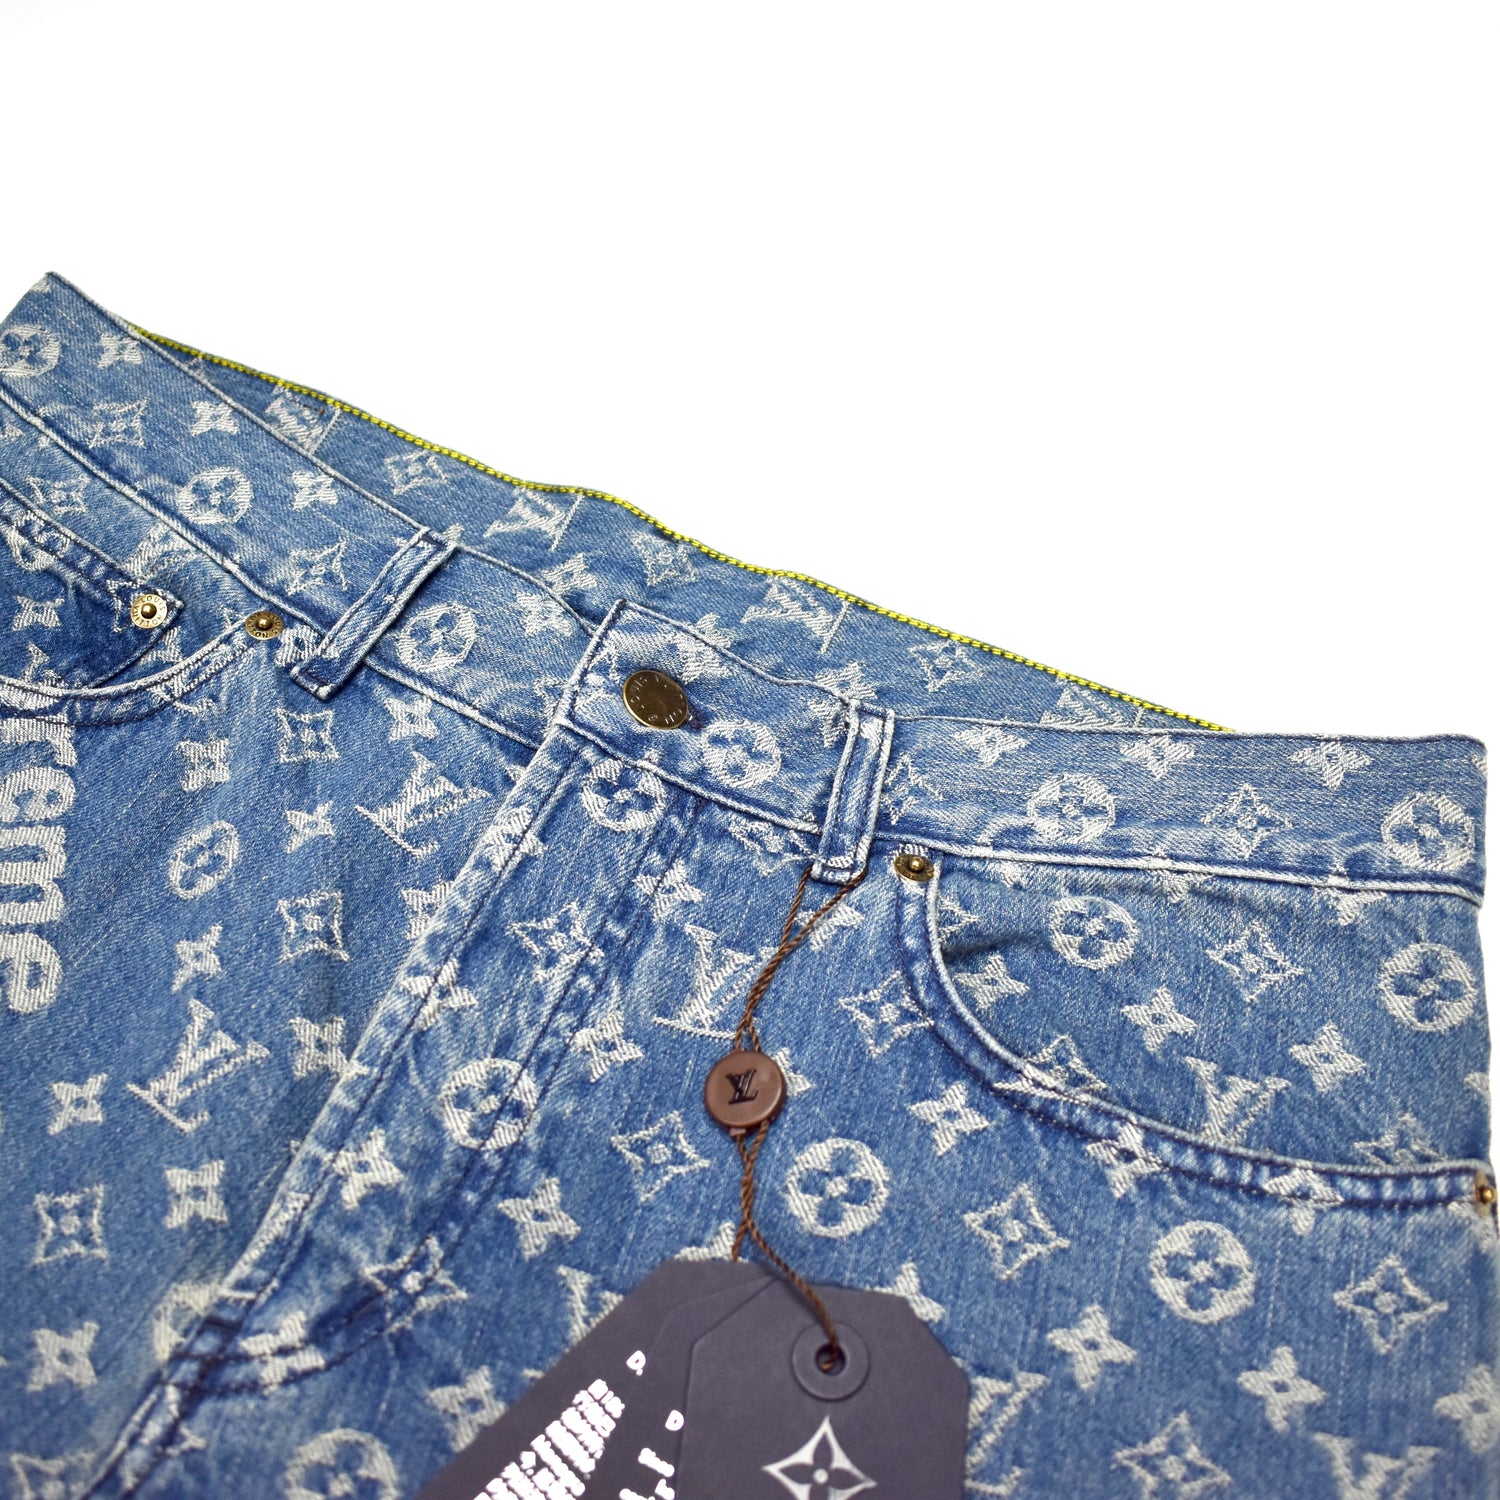 Supreme x Louis Vuitton Denim 5-Pocket Monogram Jeans Cut Into